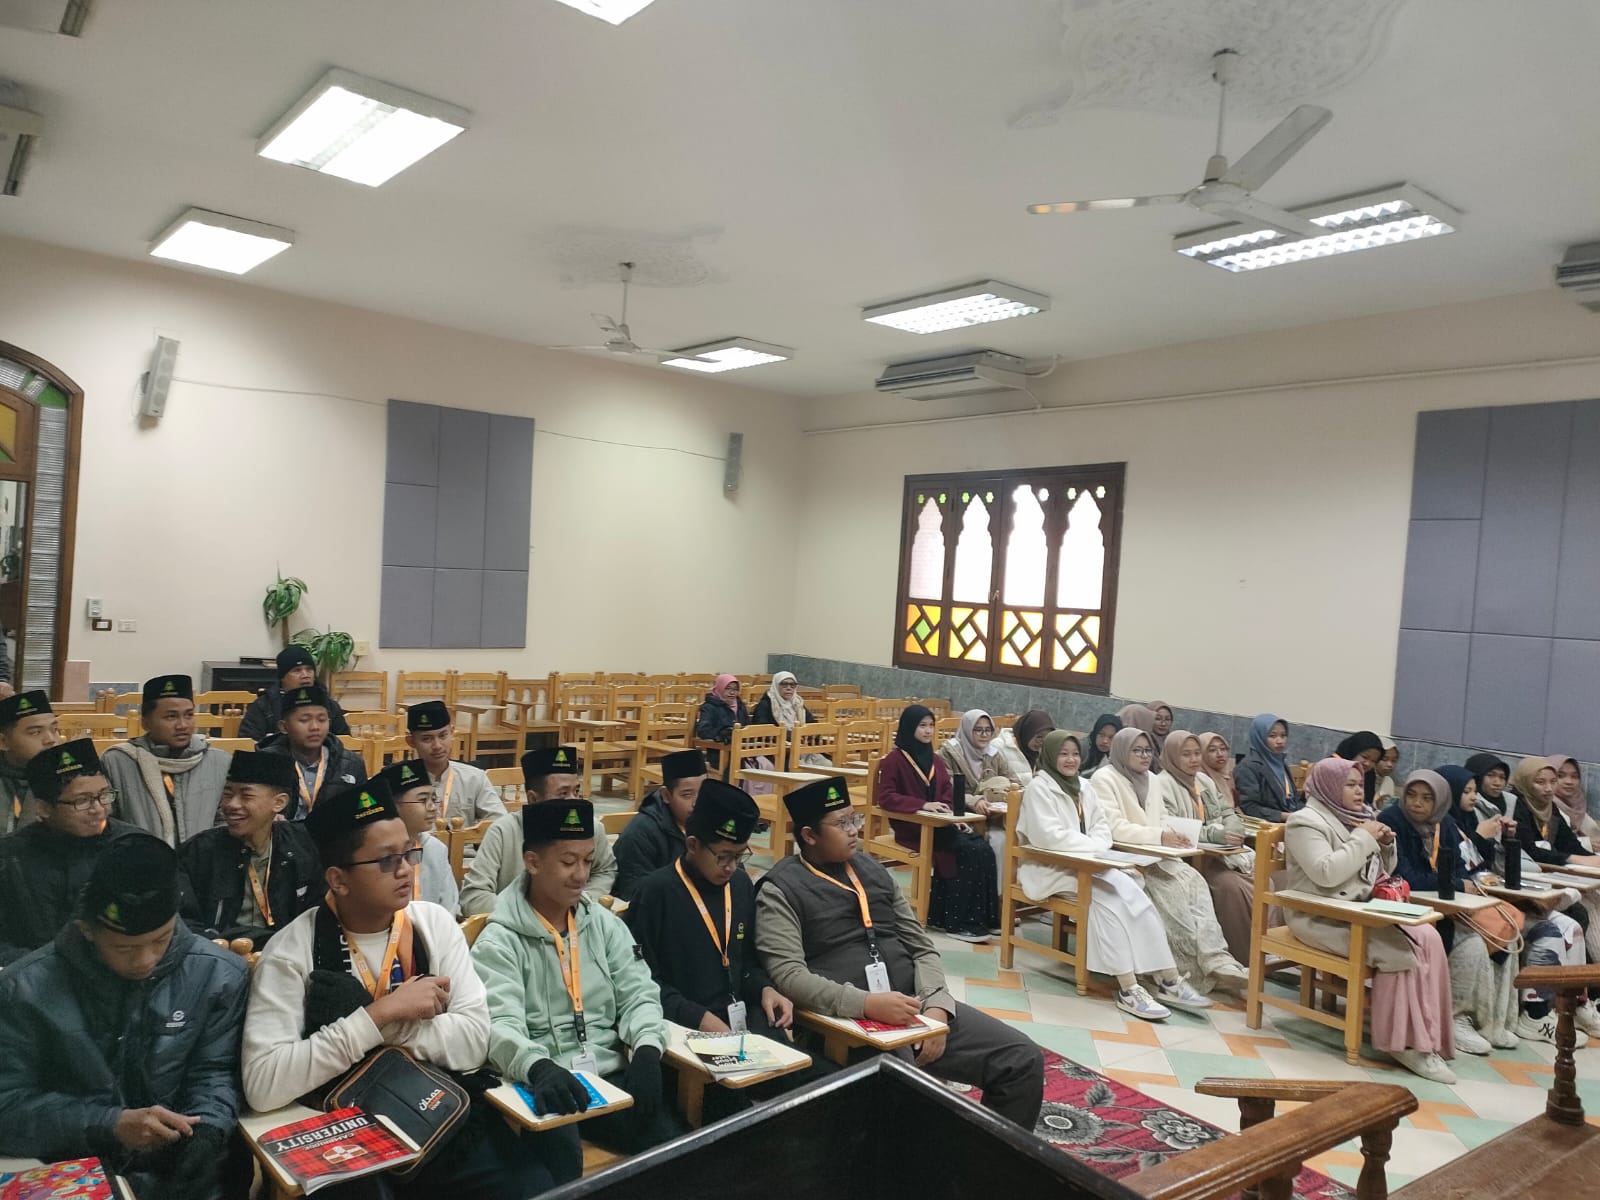 الحصري تستقبل 40 طالبًا إندونيسيًّا في دورة تدريبية لعلوم القرآن الكريم